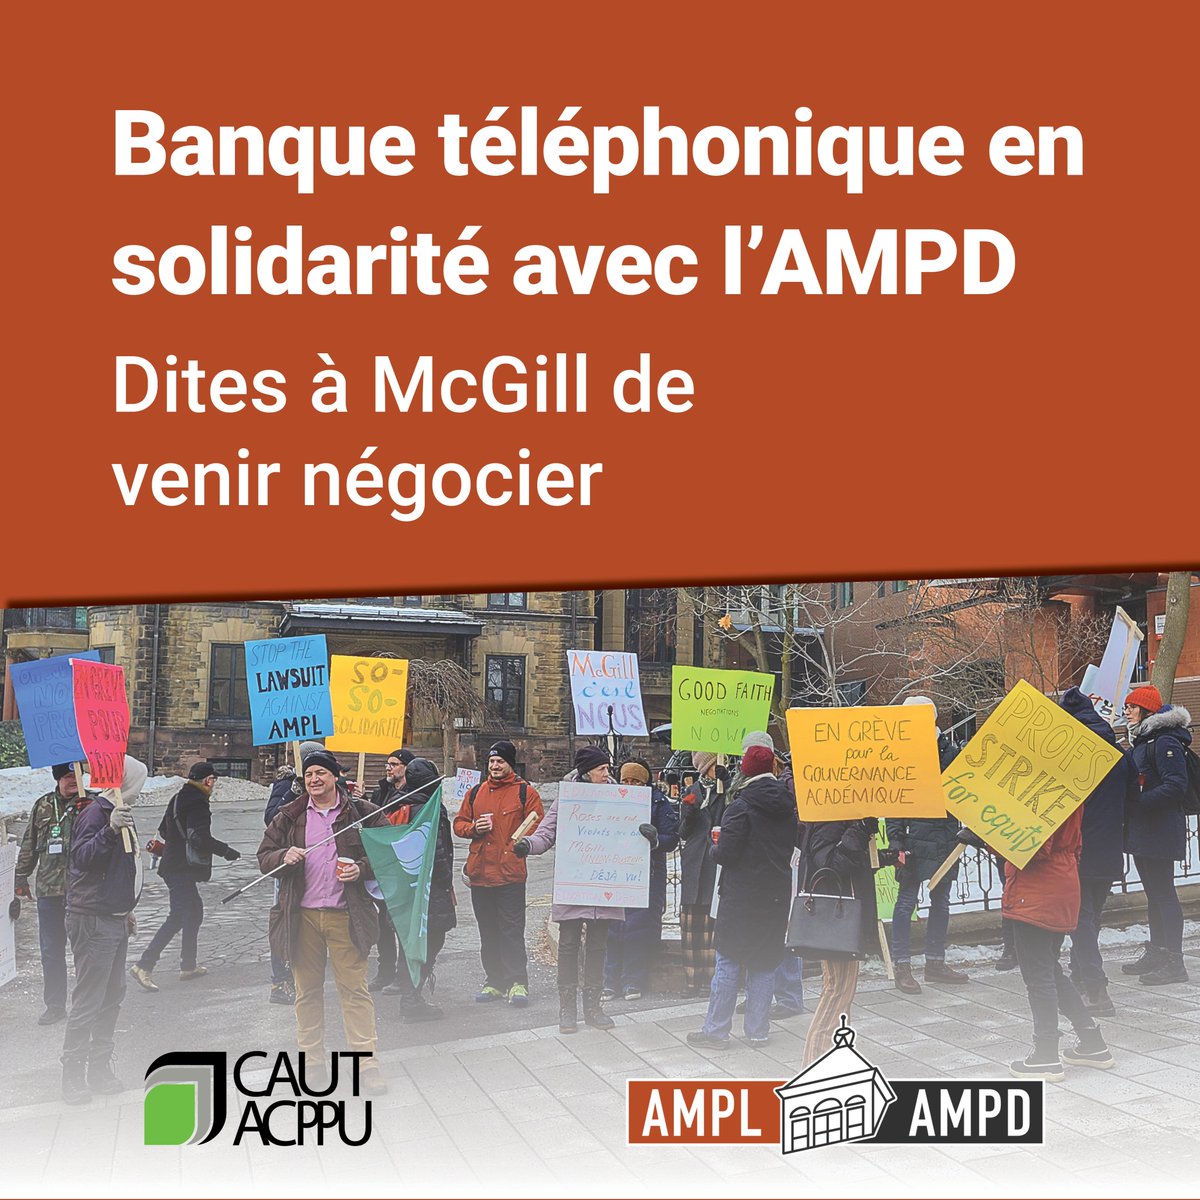 Ça fait 5 semaines que l’@AMPL_AMPD est en grève et #McGillU refuse de négocier. Aidez-nous à inonder les lignes téléphoniques de McGill le 23 mai pour exiger qu’ils négocient et s’assurer qu'ils arrêtent d’ignorer l’AMPD. Inscrivez-vous: cutt.ly/AMPL